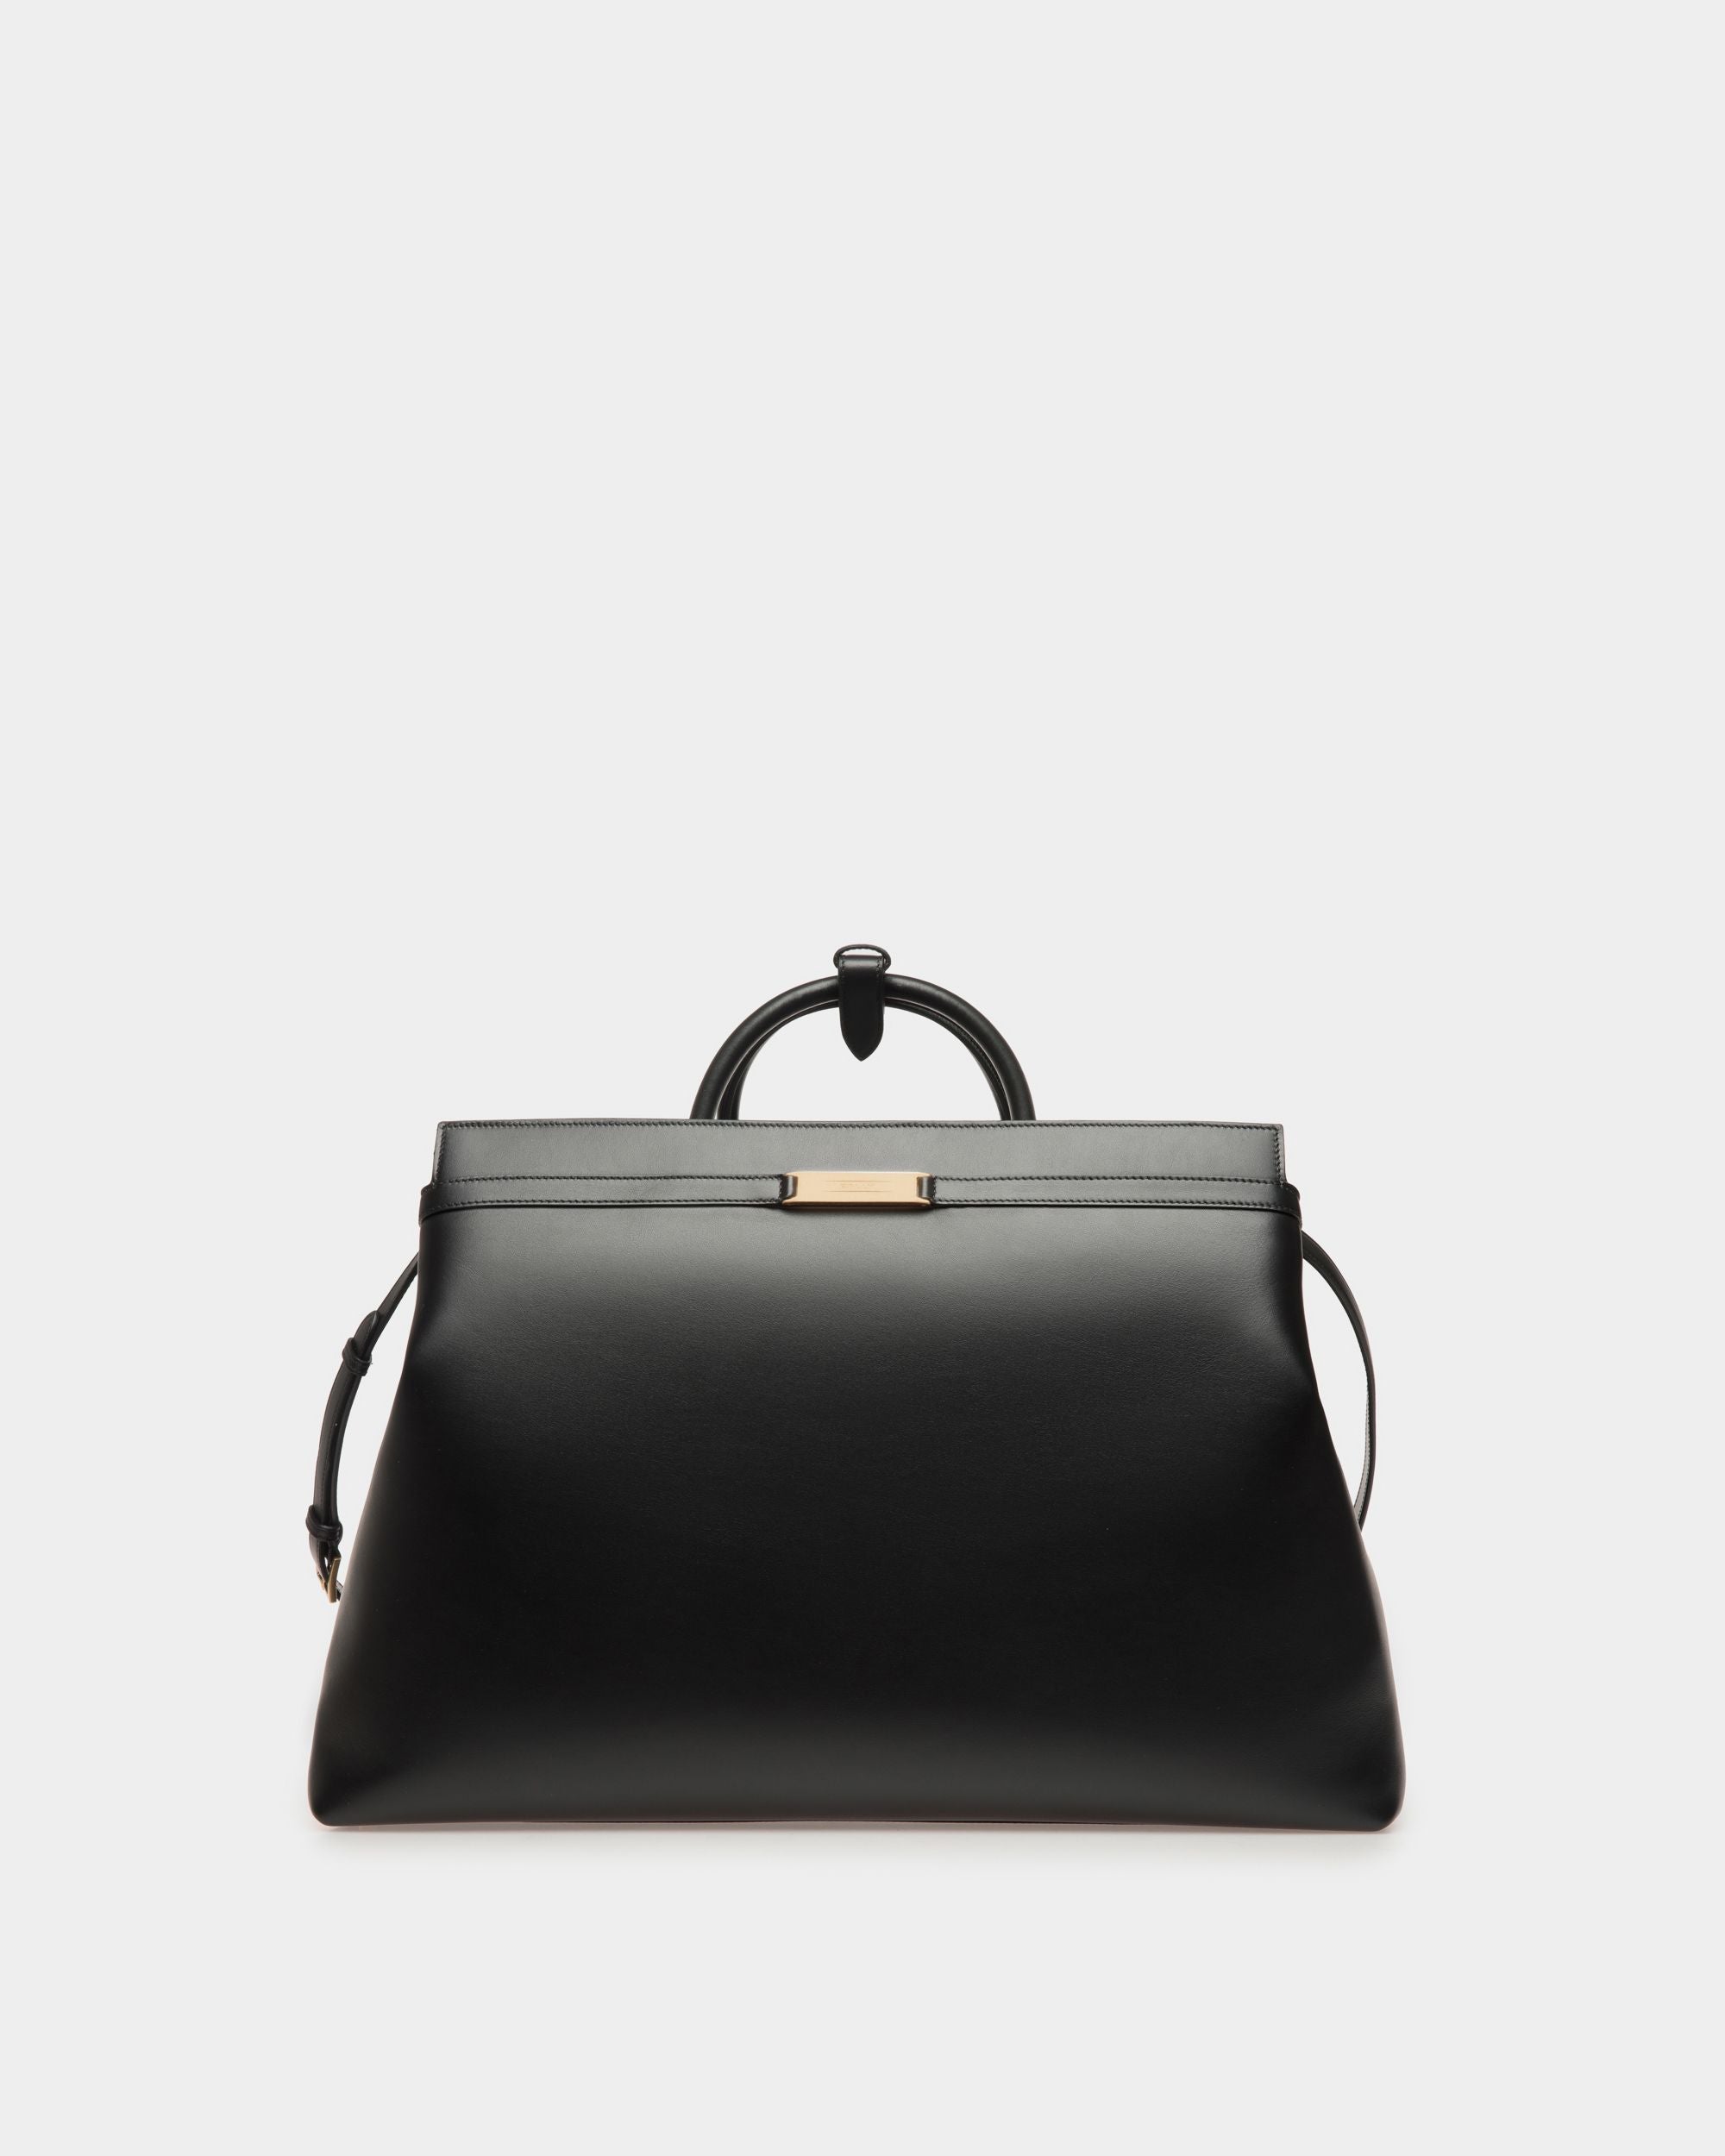 Deco | Reisetasche für Herren aus schwarzem Leder | Bally | Still Life Vorderseite